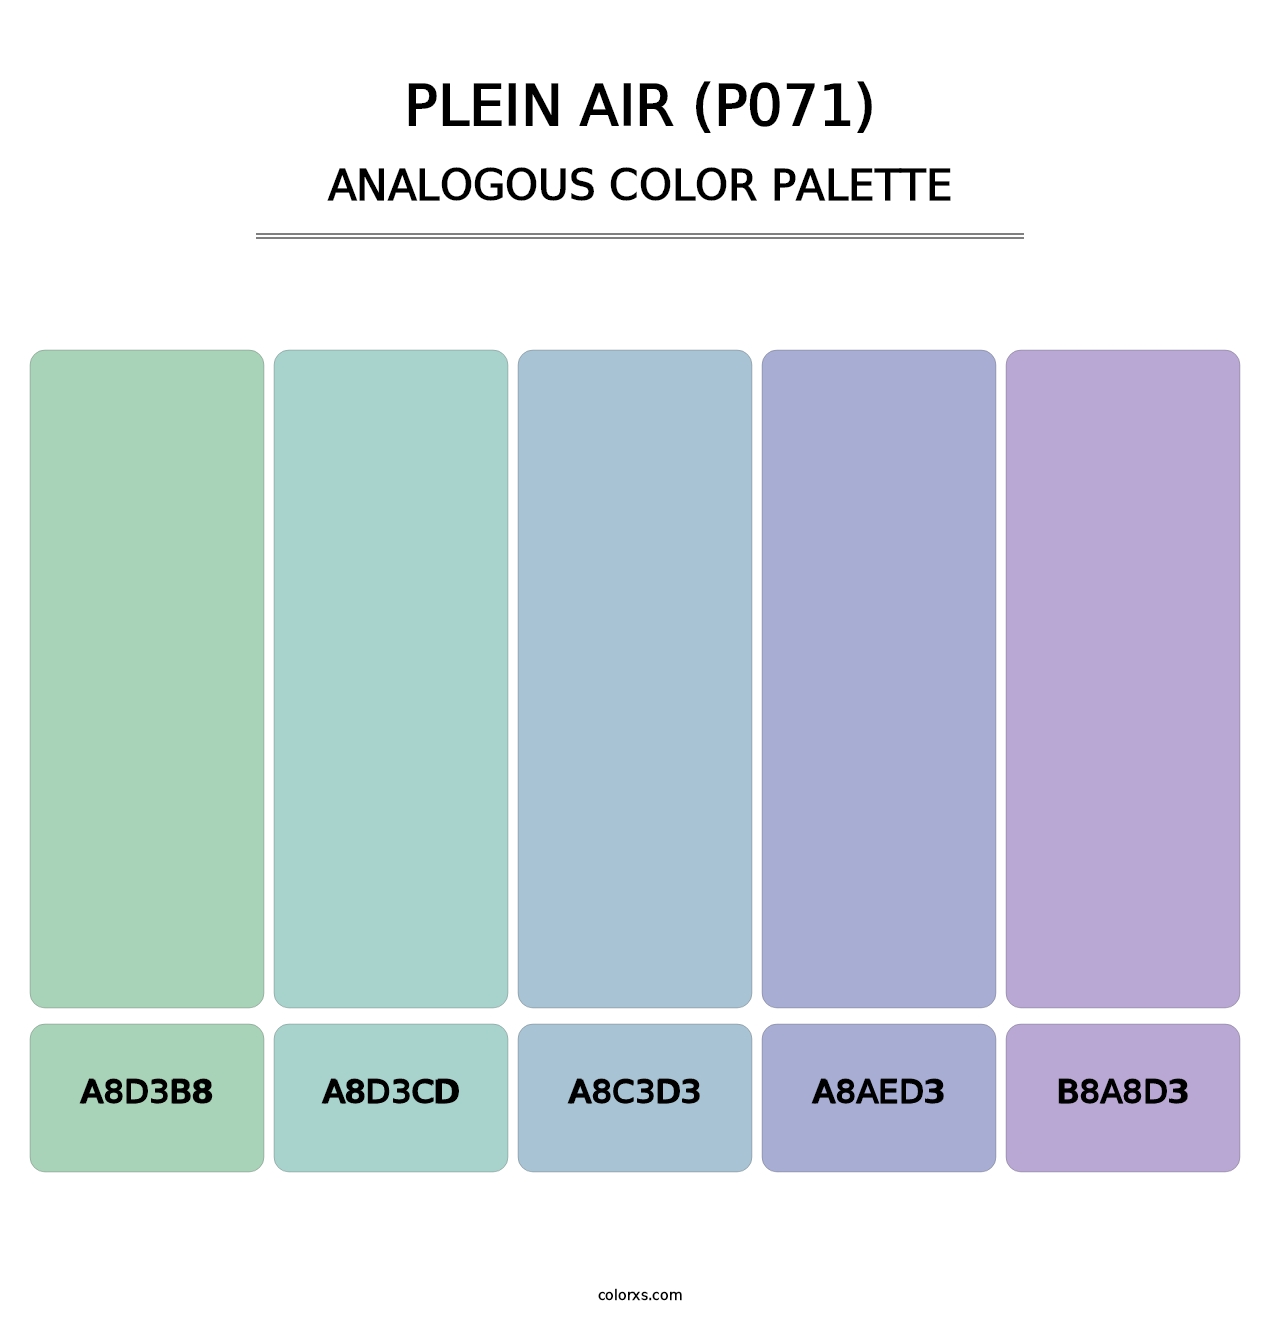 Plein Air (P071) - Analogous Color Palette